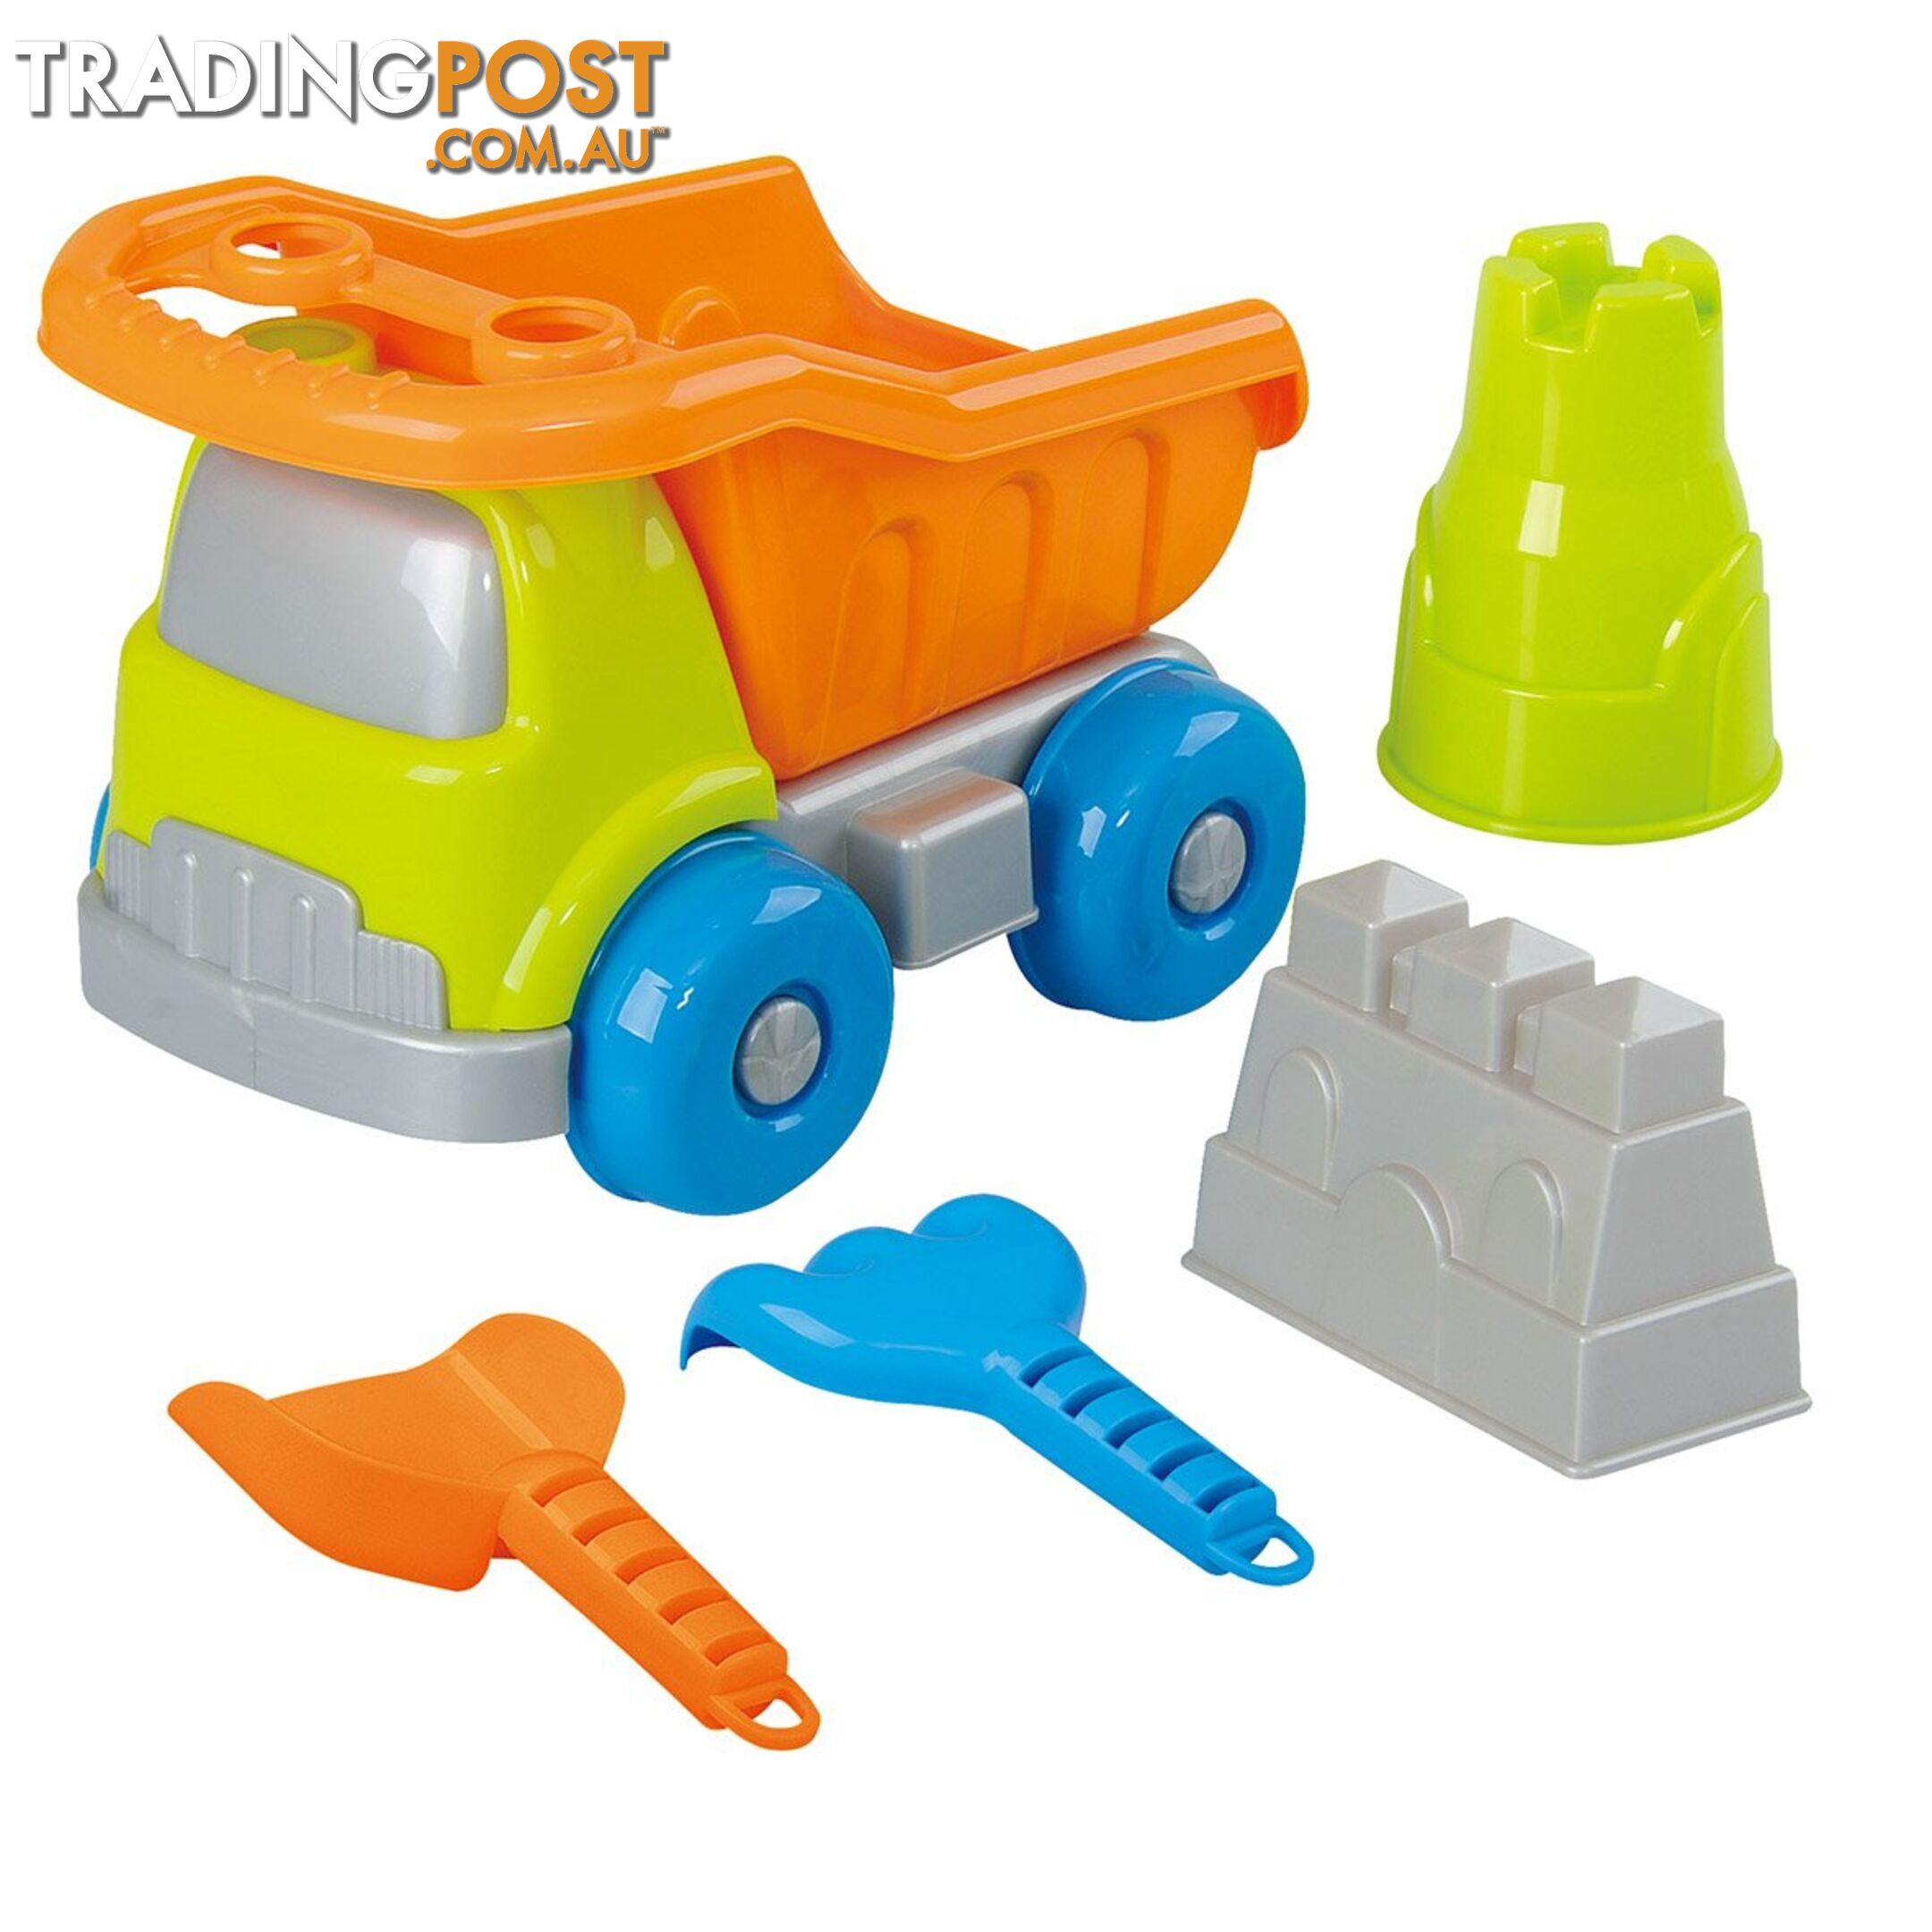 Seaside Dump Truck Set Playgo Toys Ent. Ltd Art65506 - 4892401054432